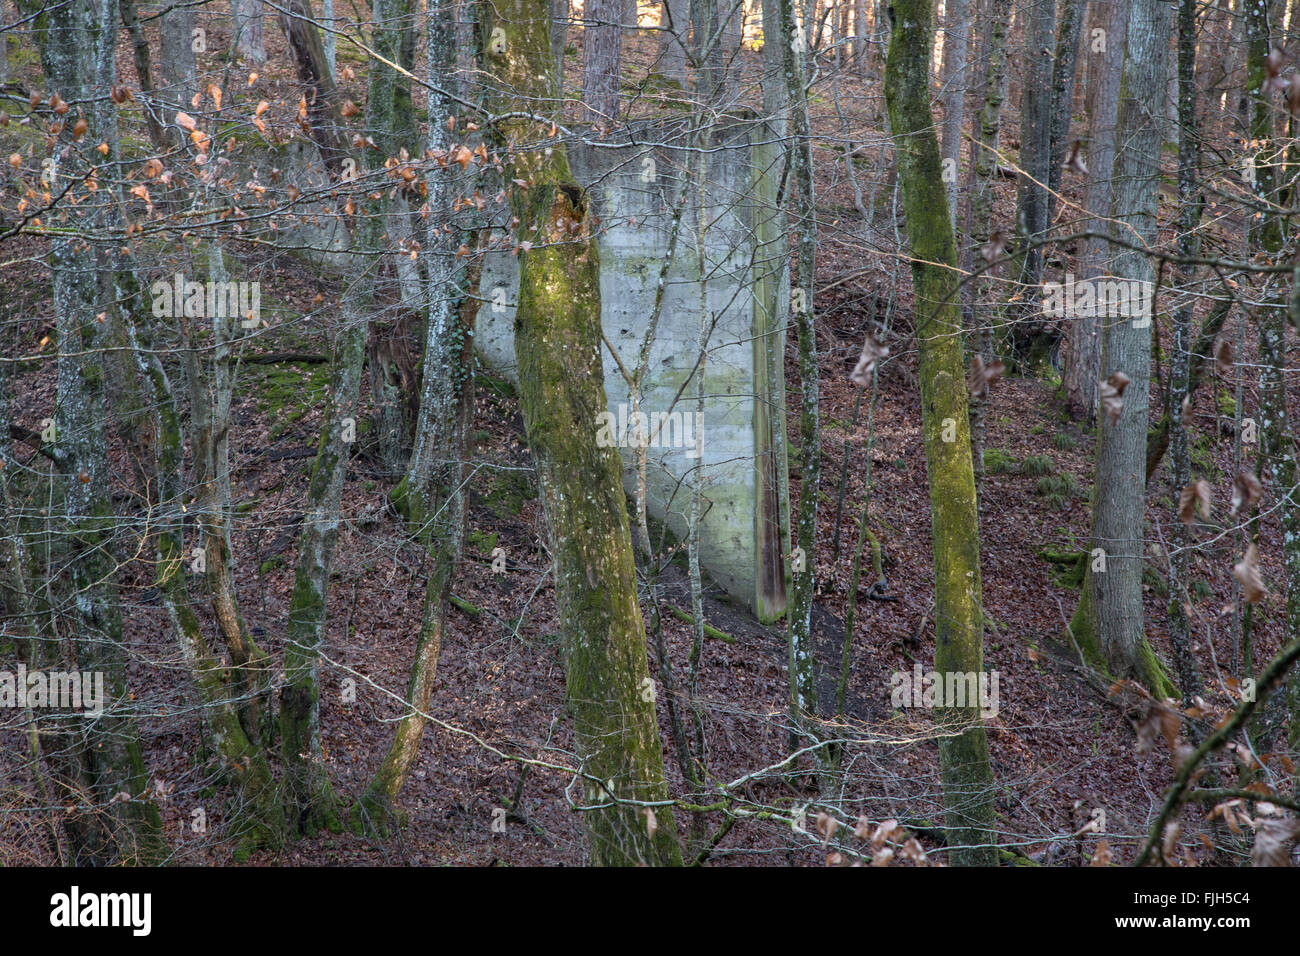 Muro de hormigón en un bosque, la función original claro, atmósfera de invierno Foto de stock